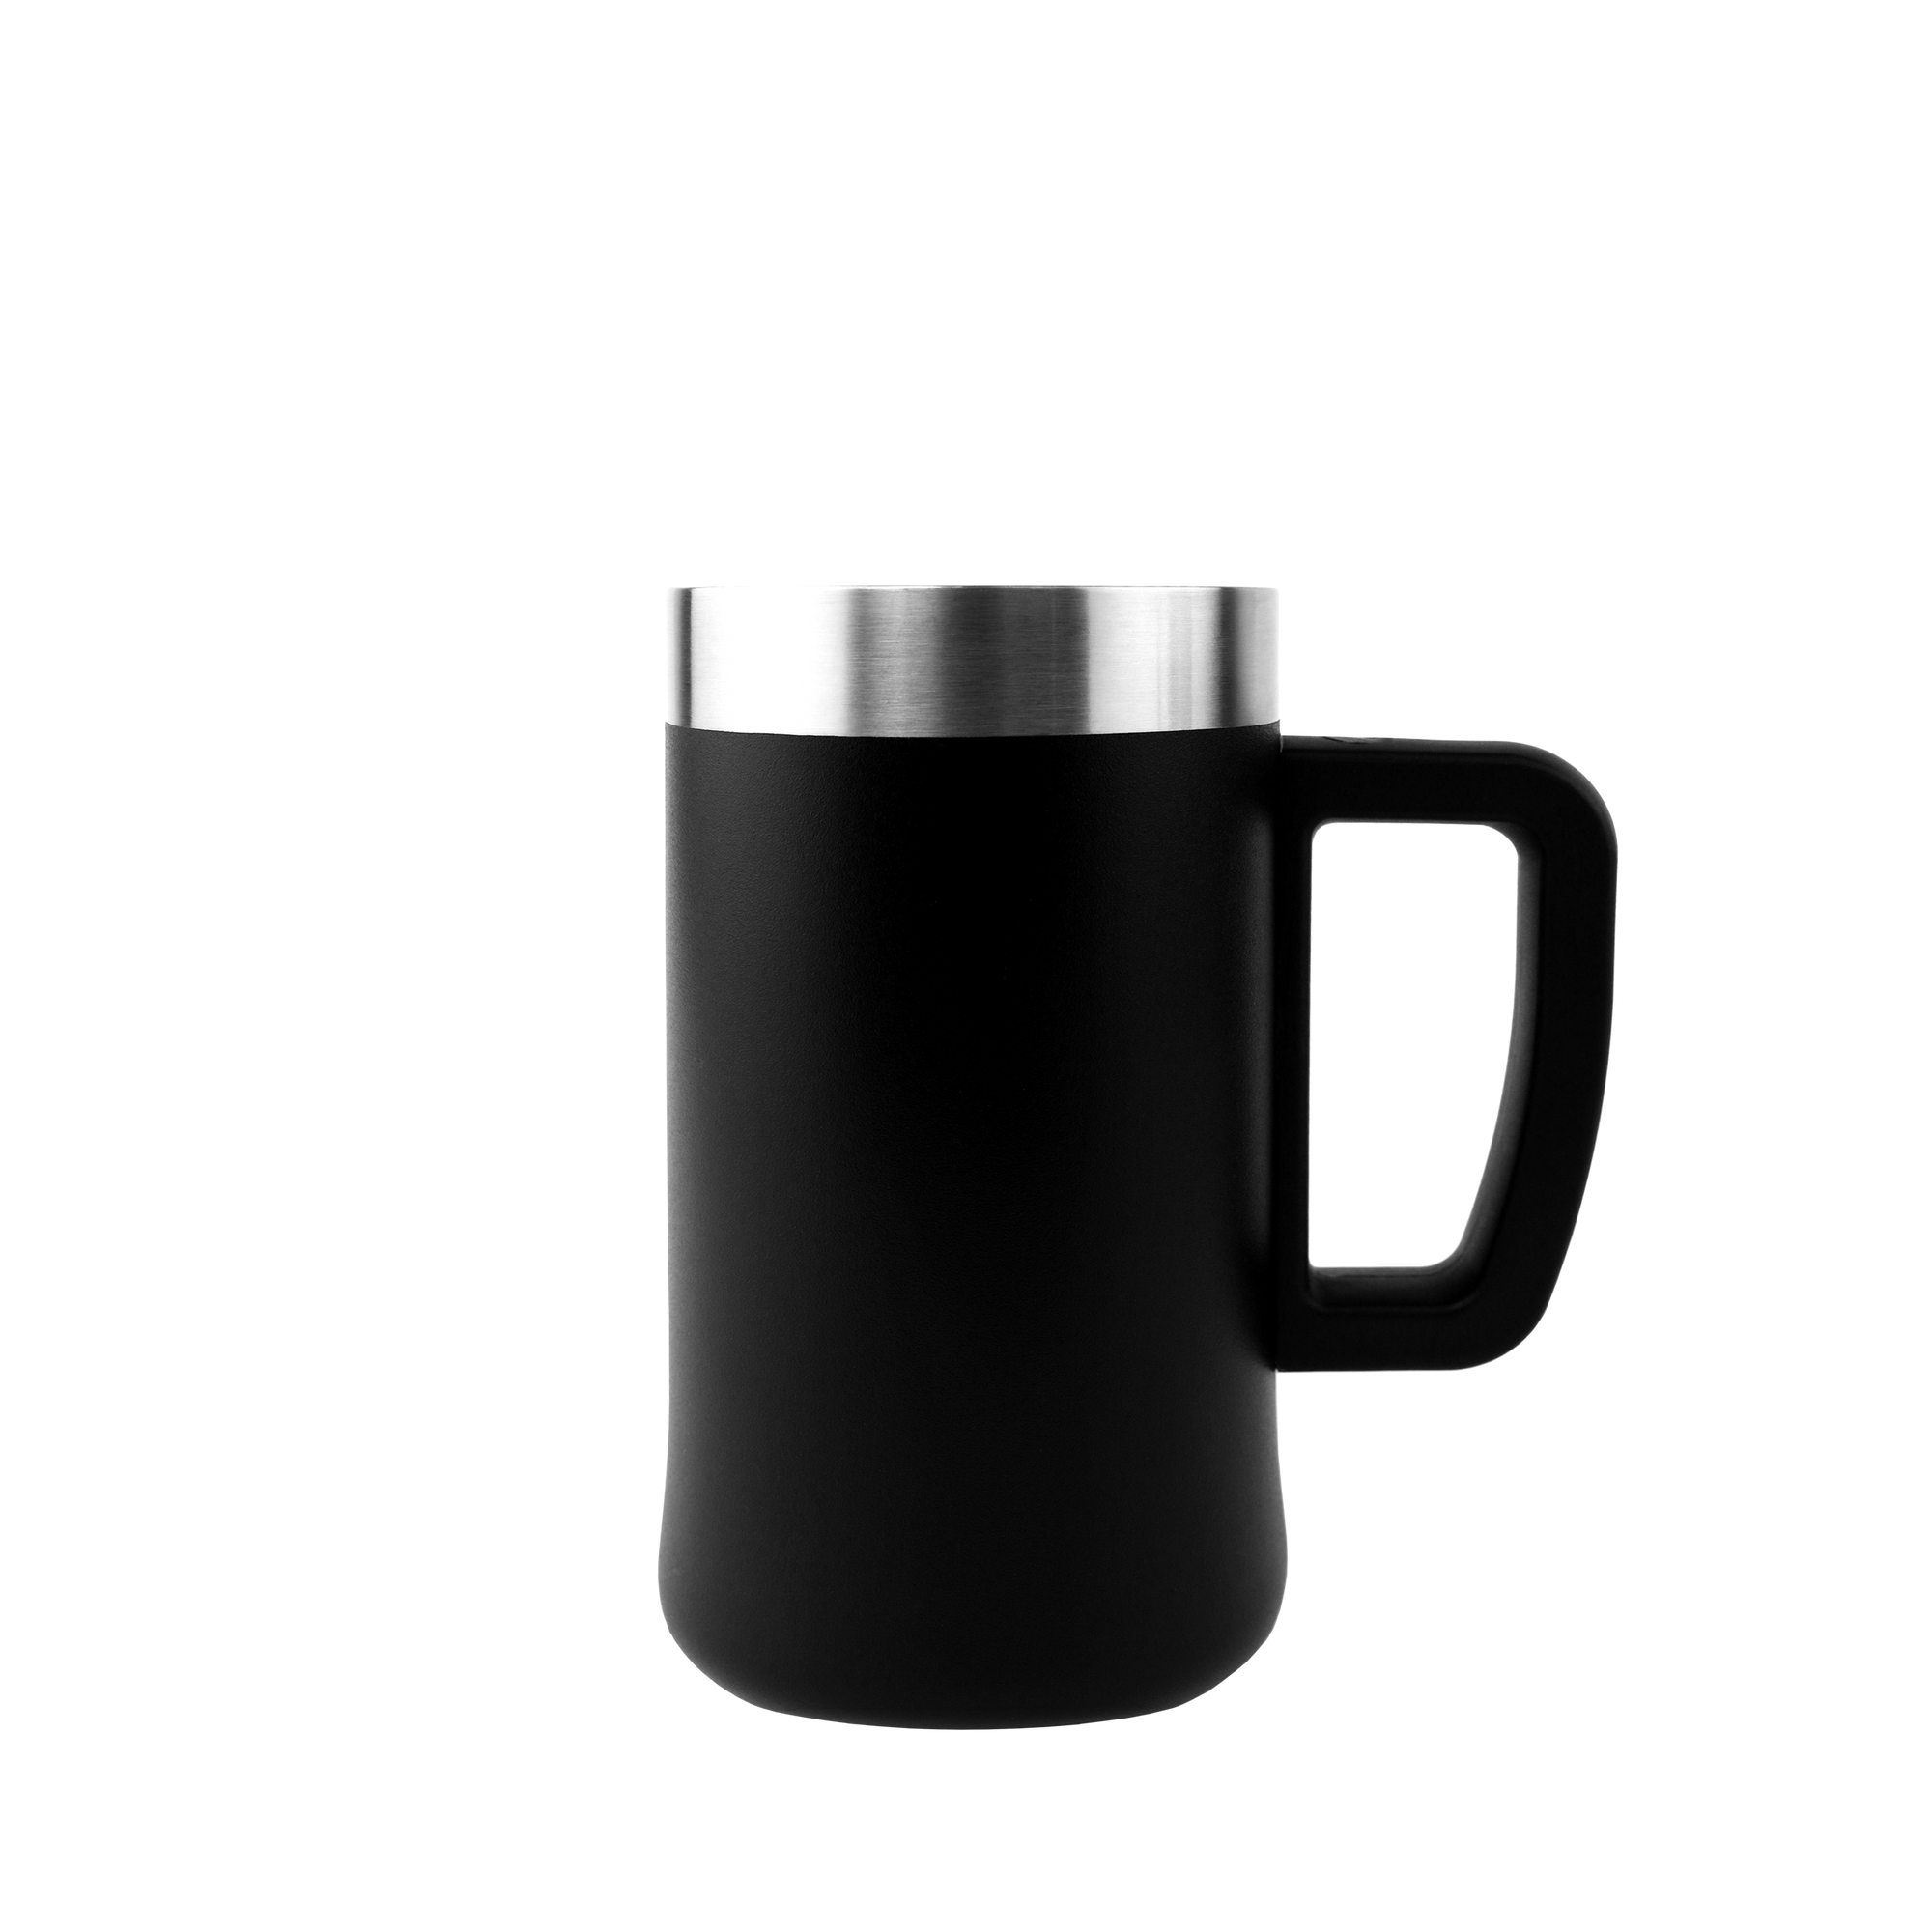 21 oz coffee mug